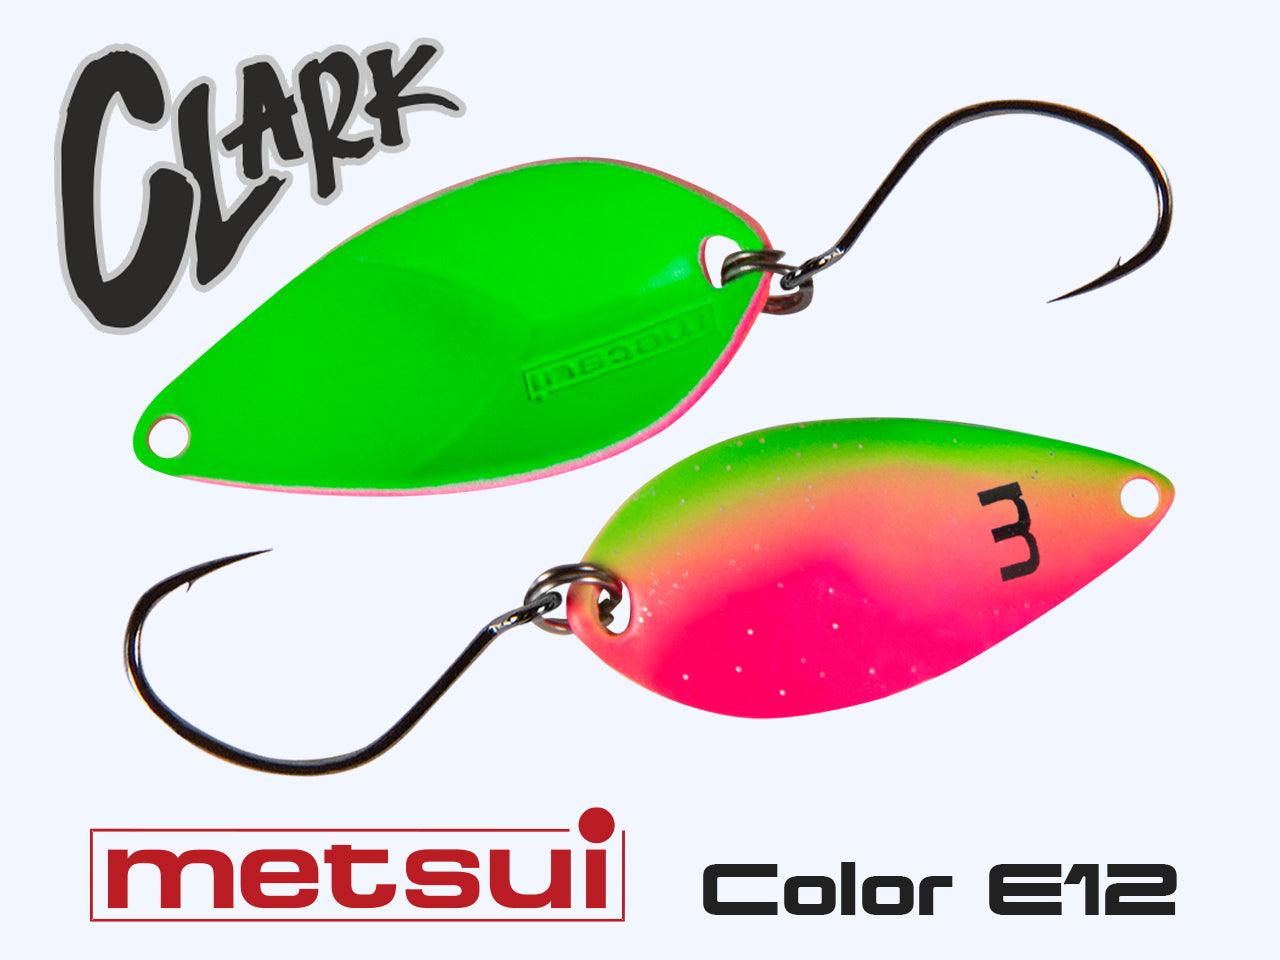 Zemex Mestsui CLARK 2.3 g - SP-Fishing